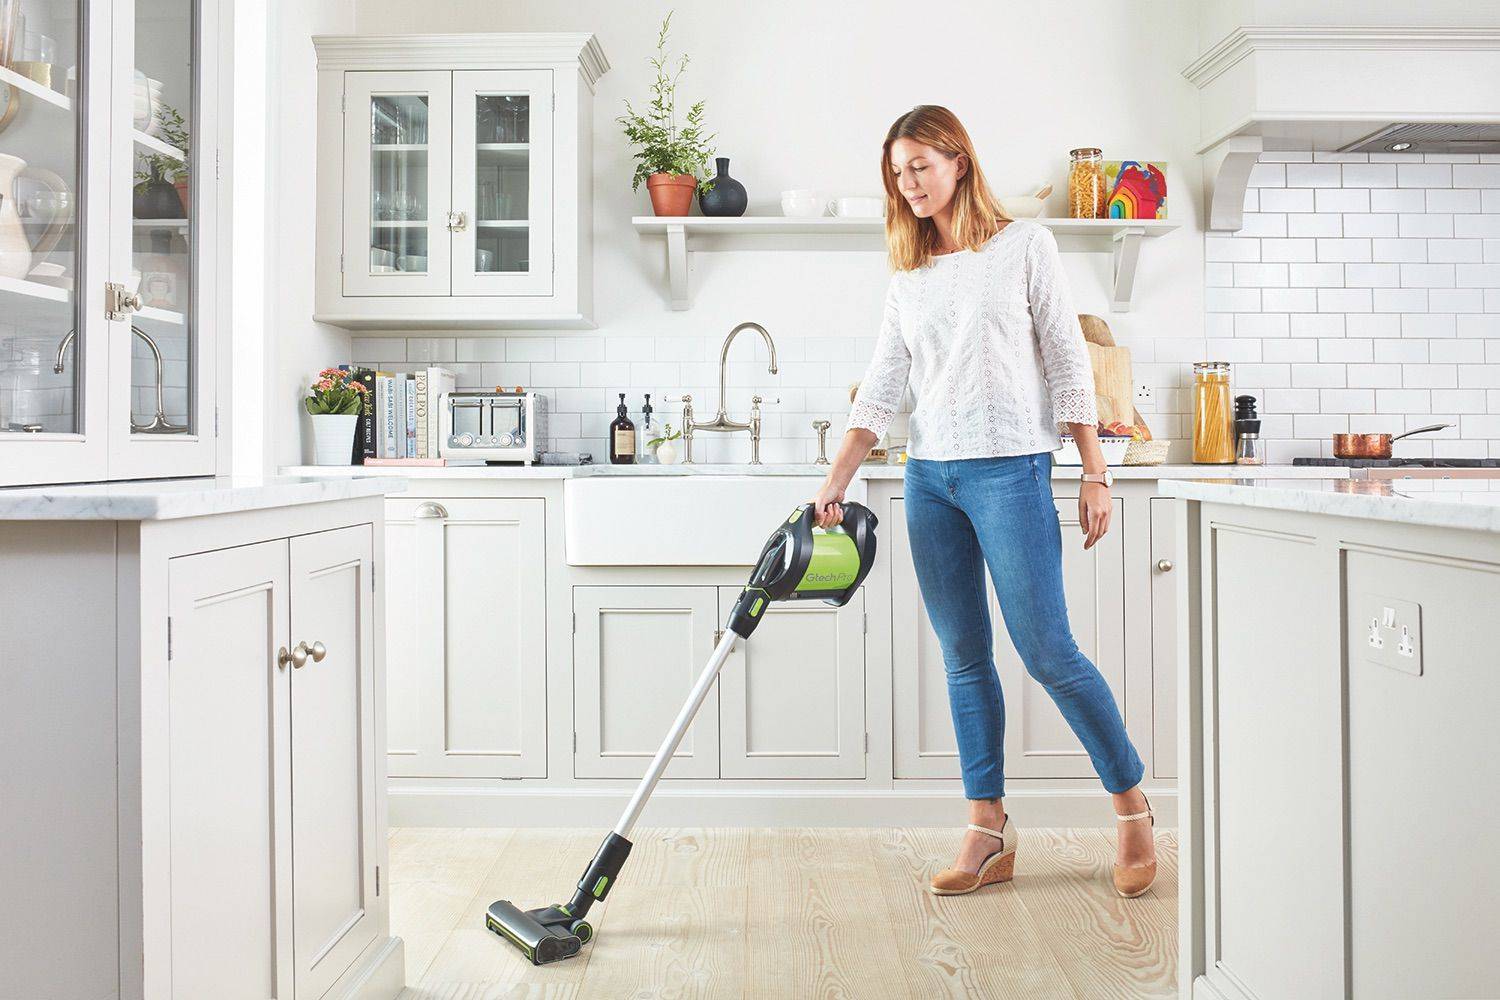 20 советов для порядка и чистоты — как навести порядок дома?